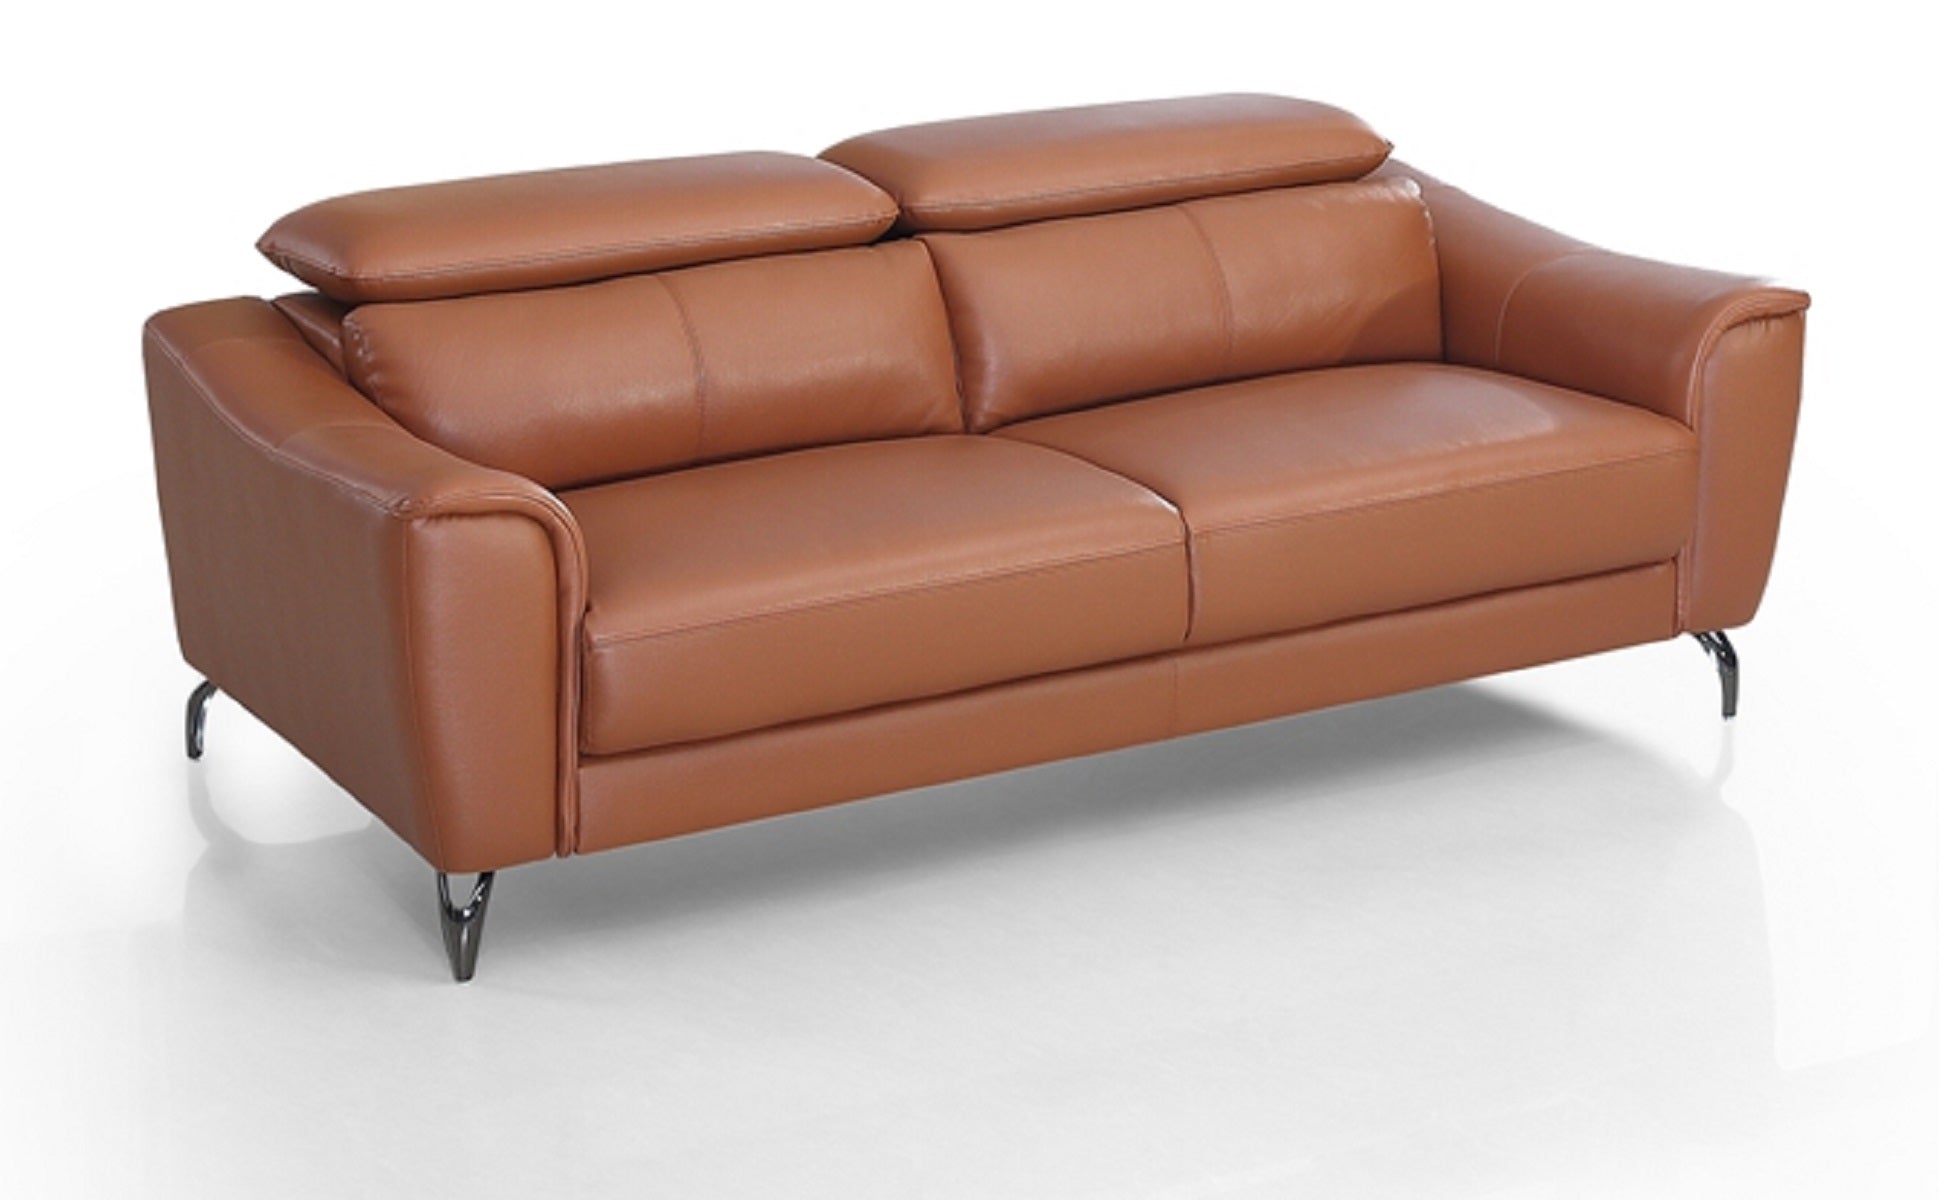 ViscoLogic DUKE Adjustable Headrest Luxury Living Room Leather